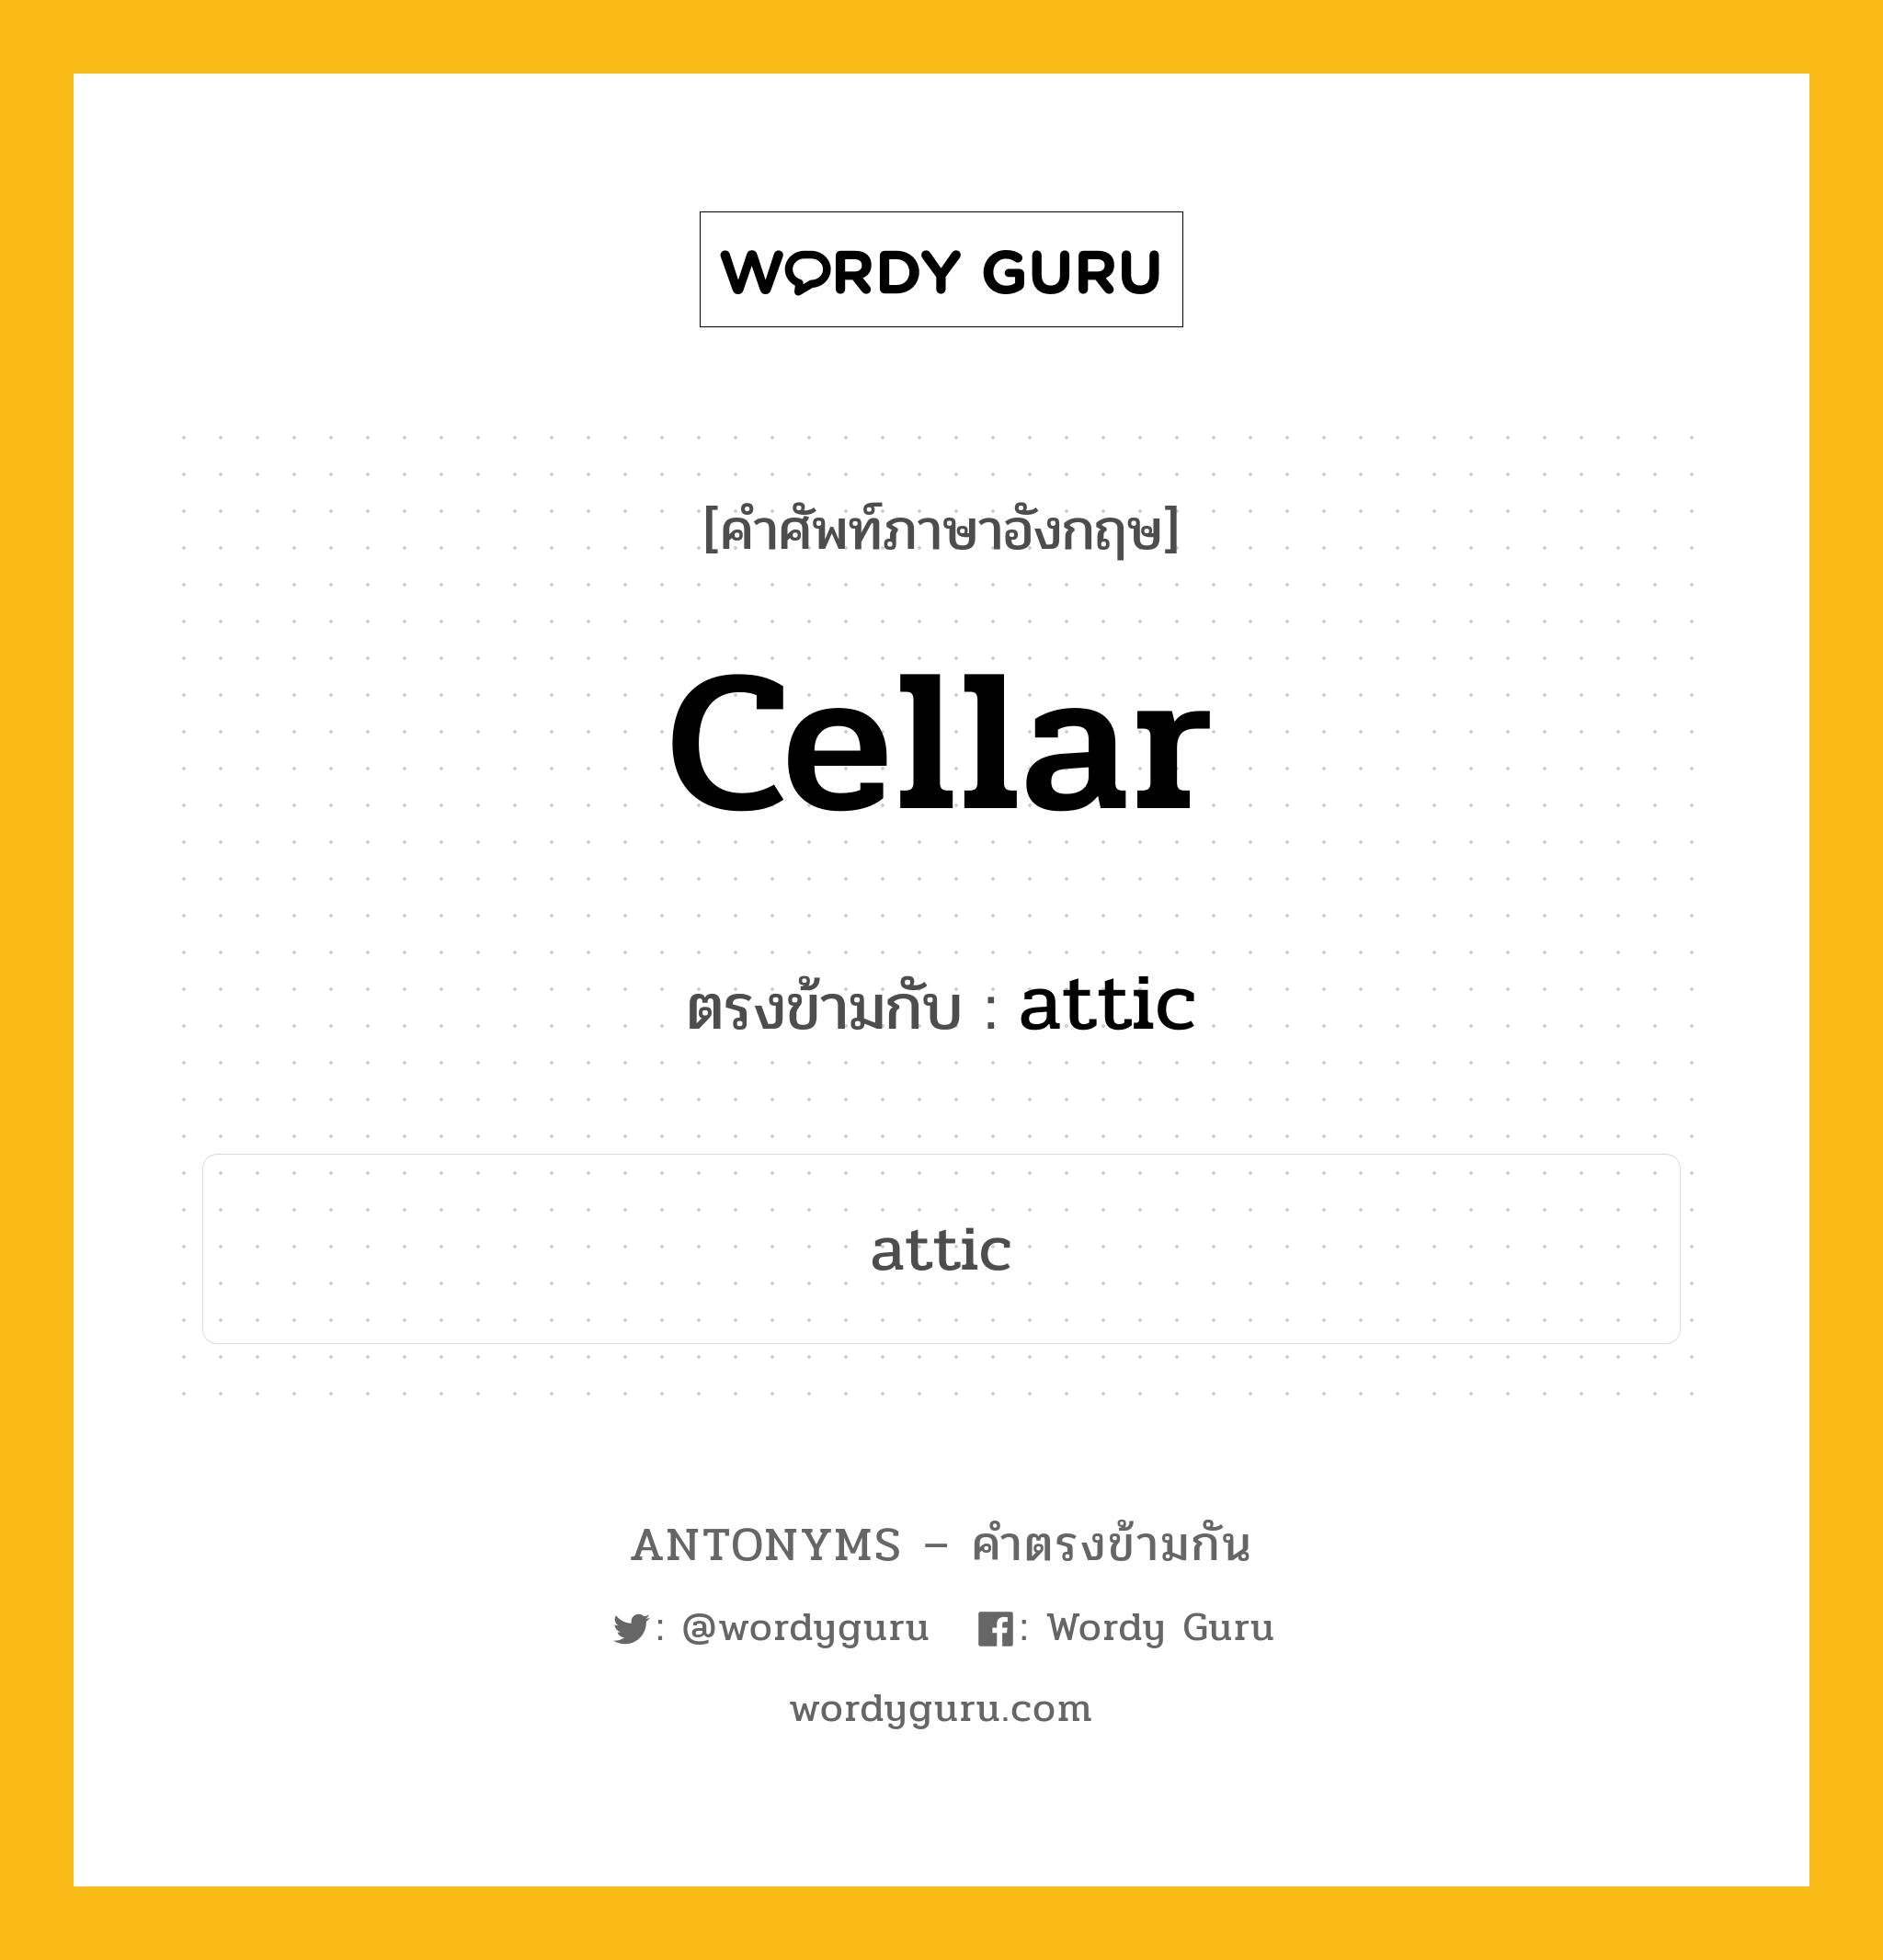 cellar เป็นคำตรงข้ามกับคำไหนบ้าง?, คำศัพท์ภาษาอังกฤษ cellar ตรงข้ามกับ attic หมวด attic